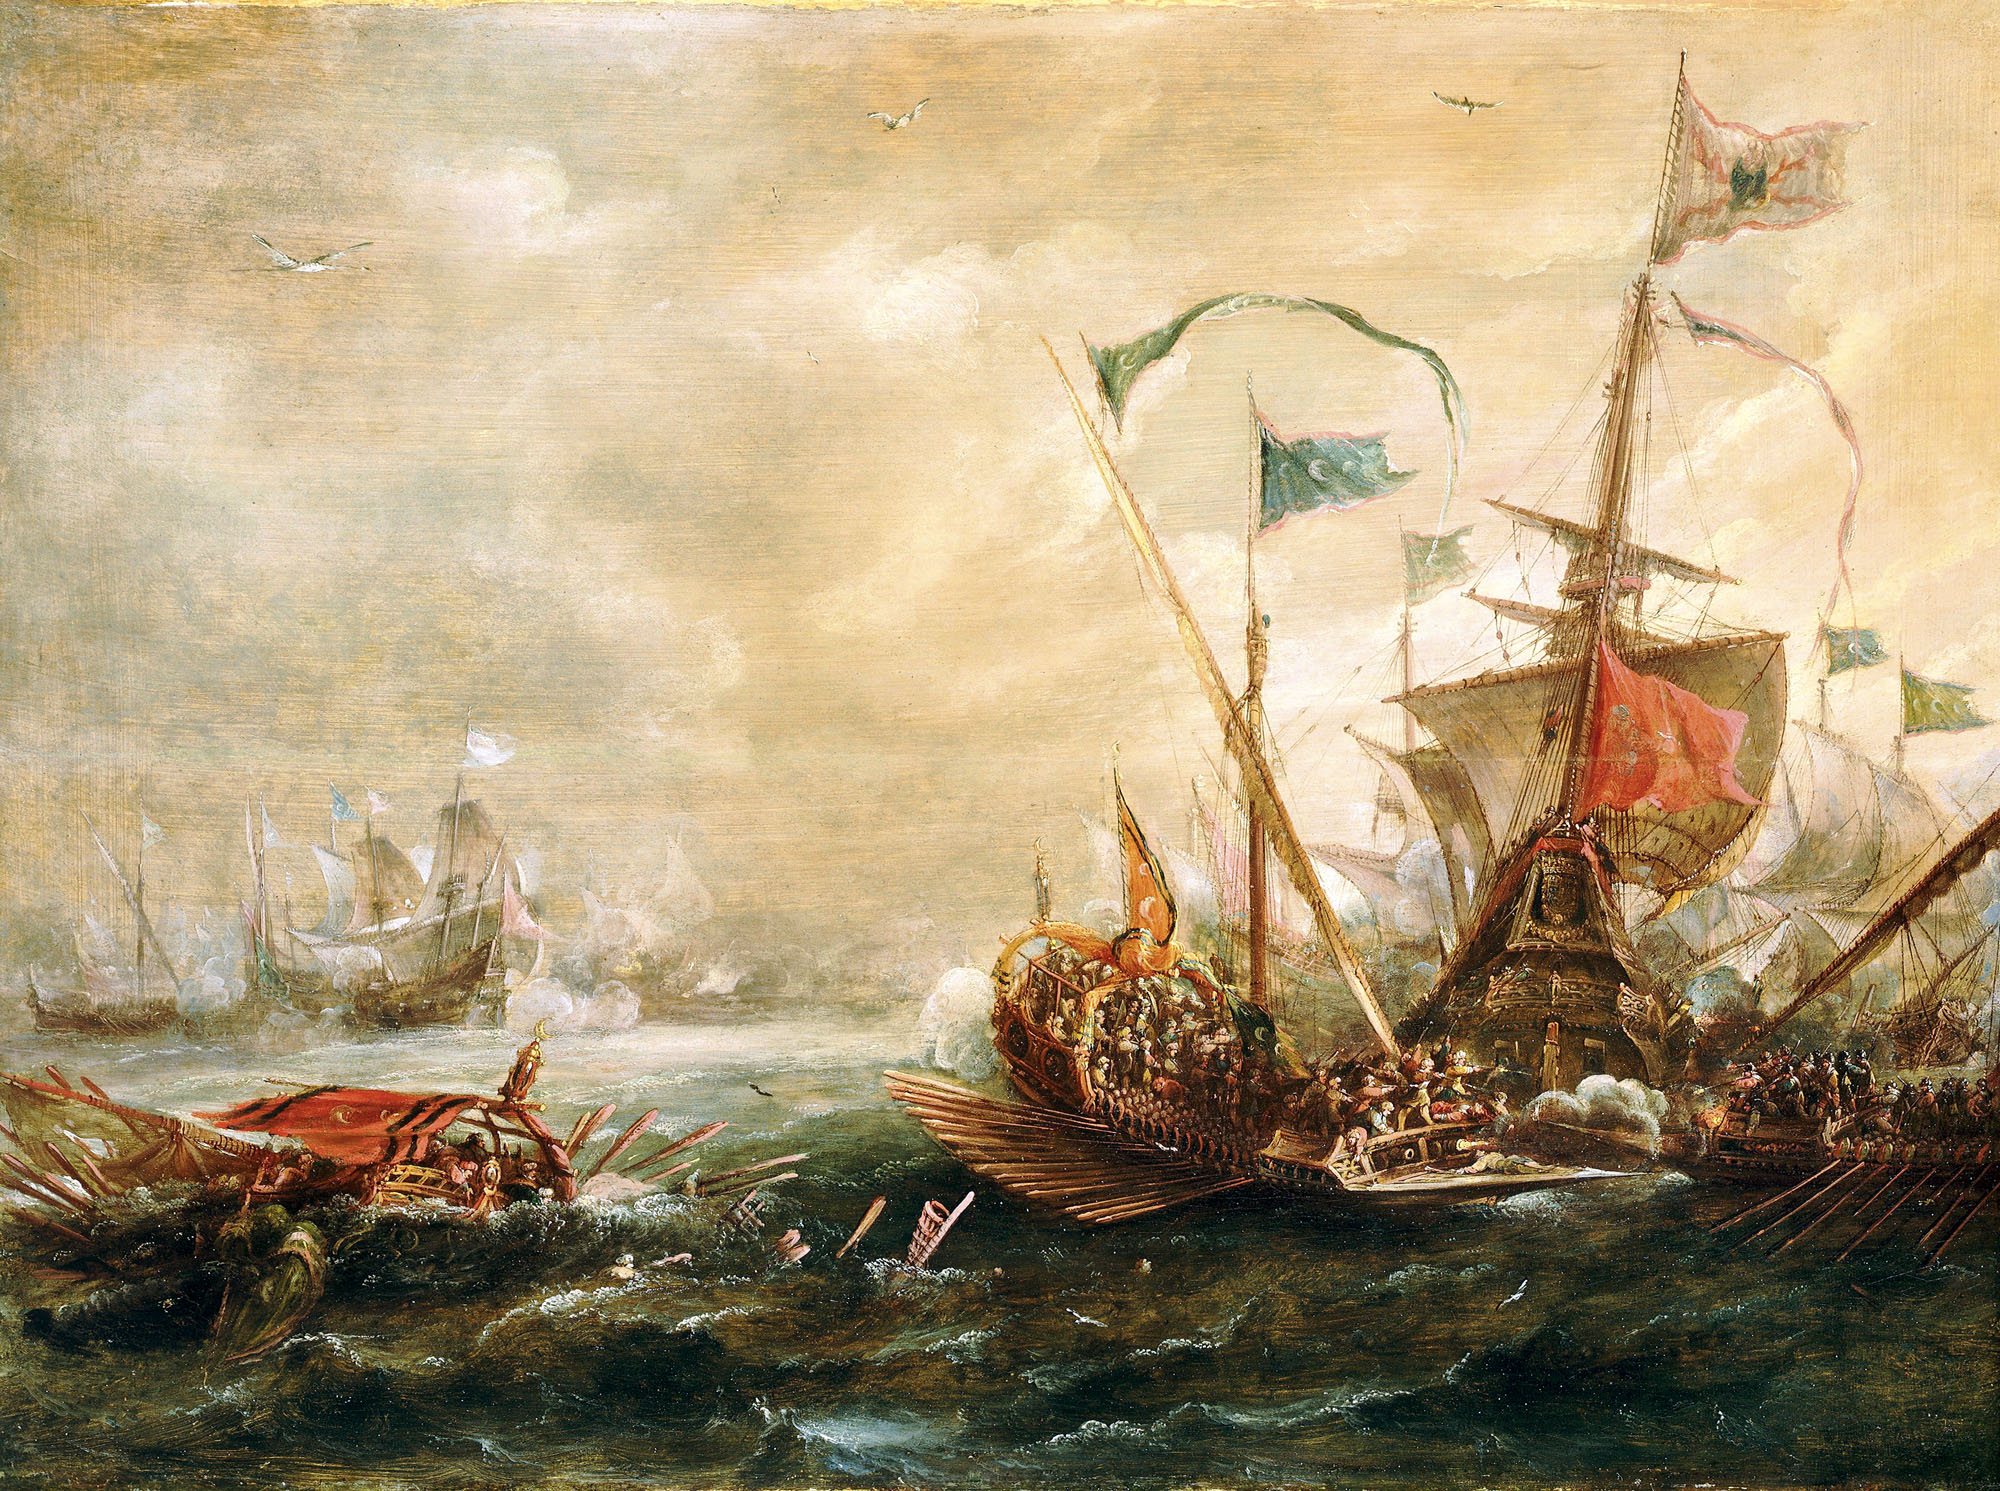 Asalto en el mar. Óleo sobre lienzo. Andries van Eertvelt, 1620